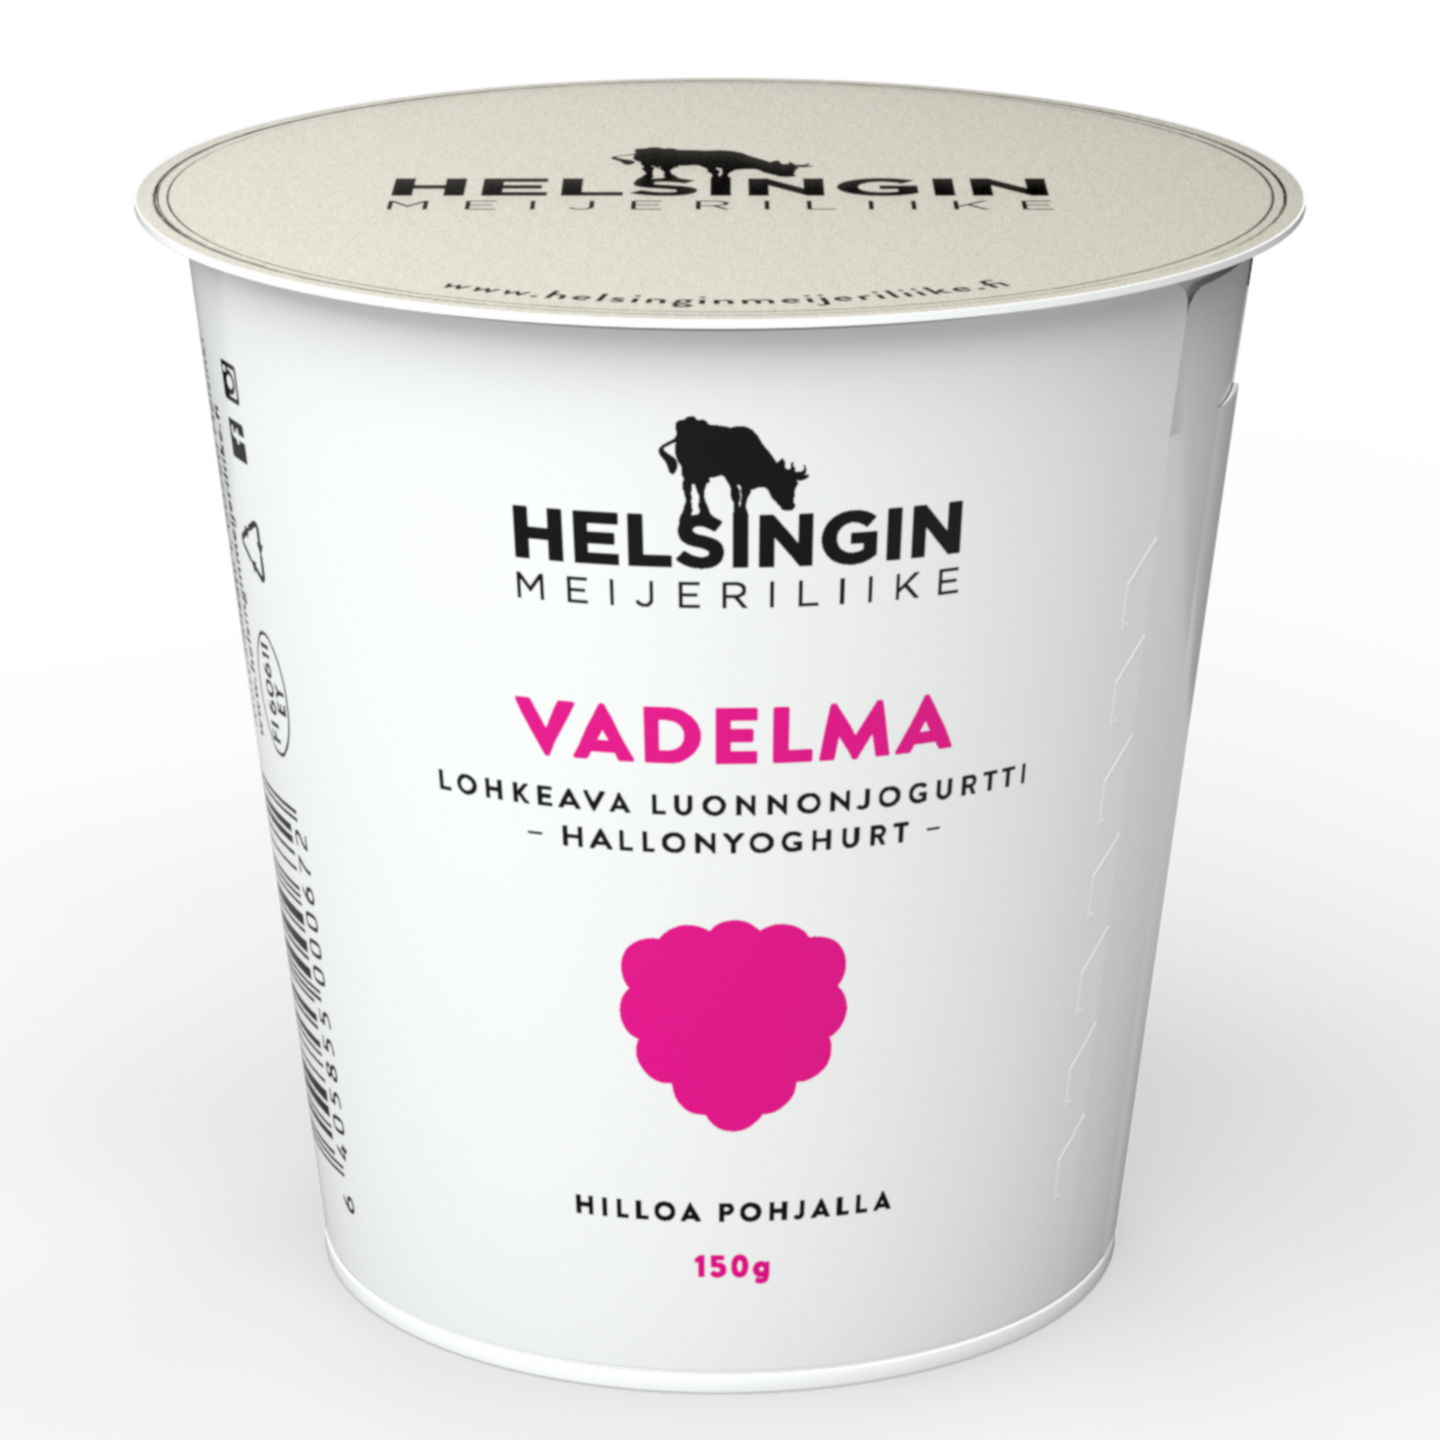 Helsingin Meijeriliike luonnonjogurtti 150g vadelma